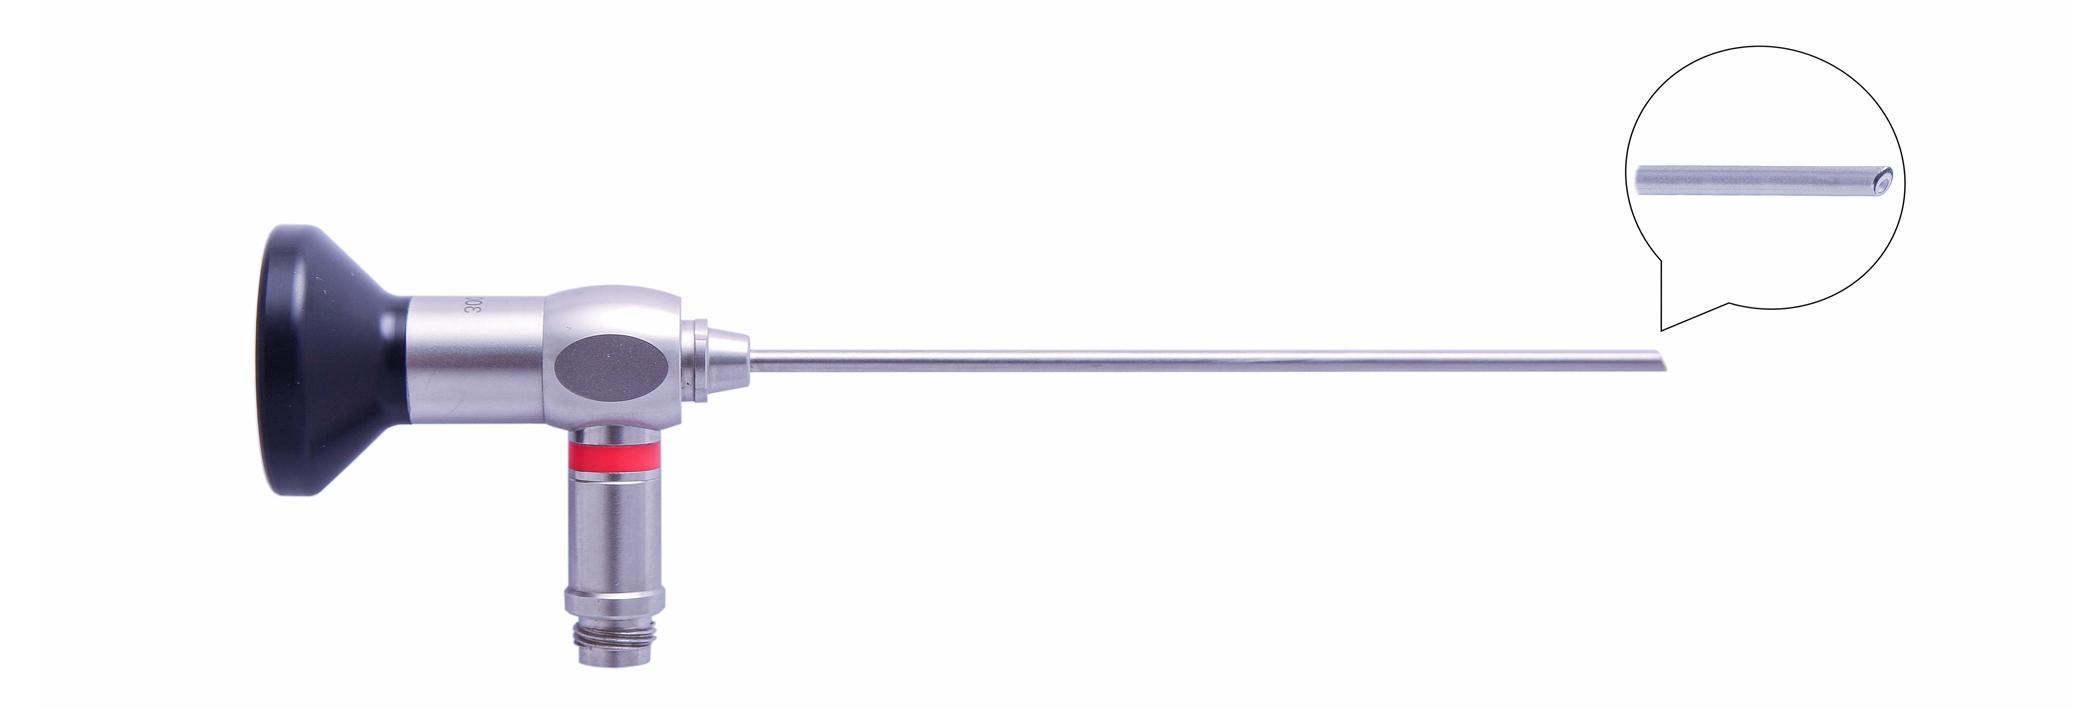 Трубка оптическая (артроскопическая, риноскопическая) ТОАР-005 диам. 2.7 мм, с углом наблюдения 30 гр. (дл. 110 мм)